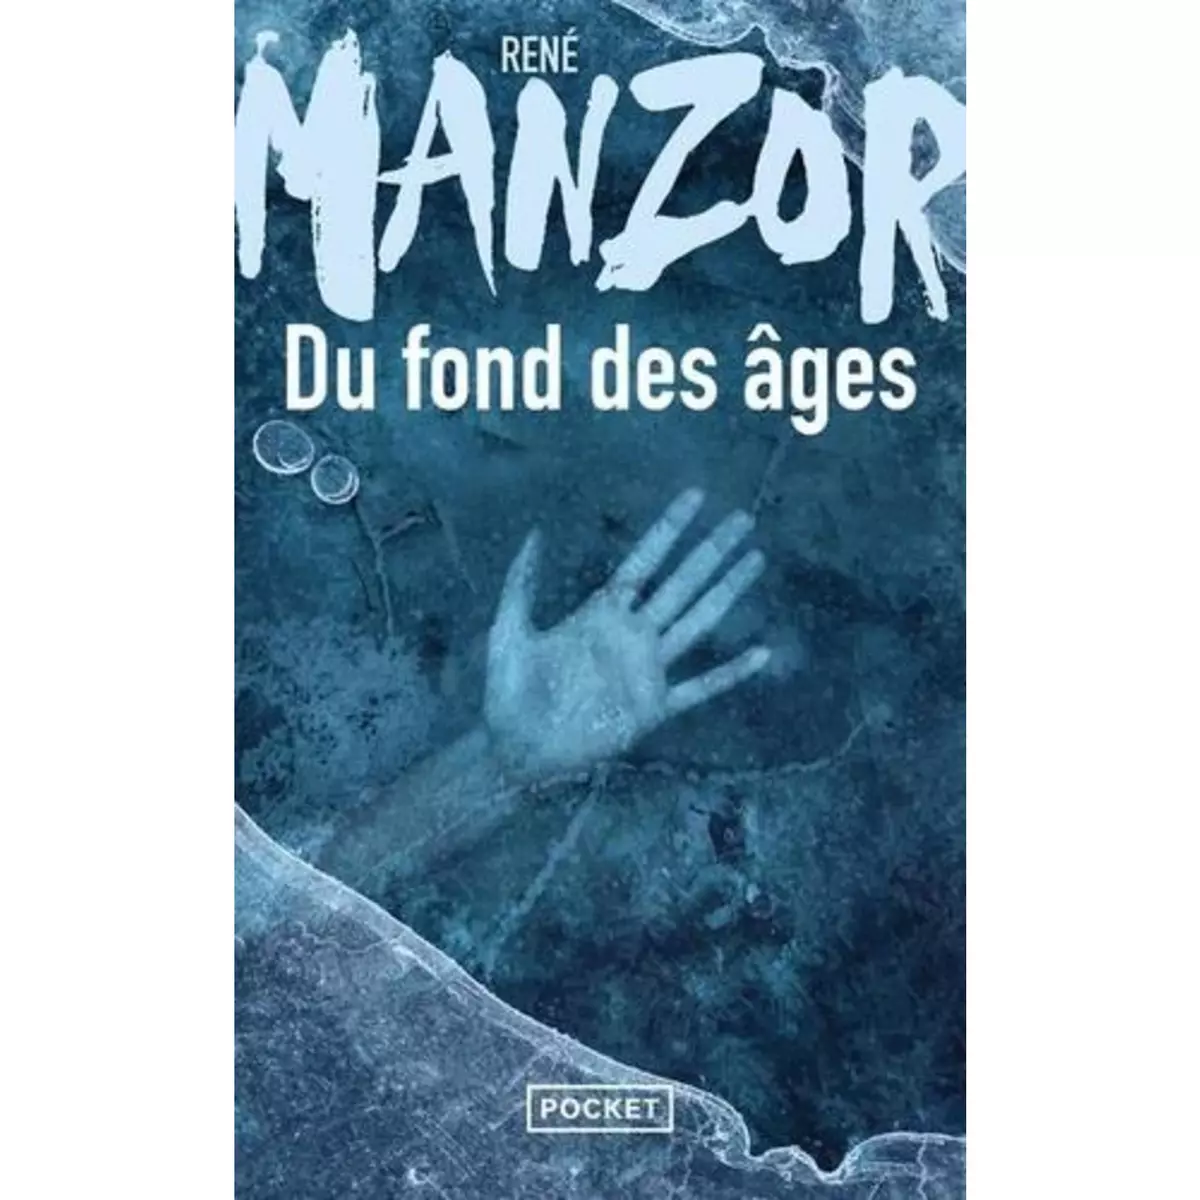  DU FOND DES AGES, Manzor René